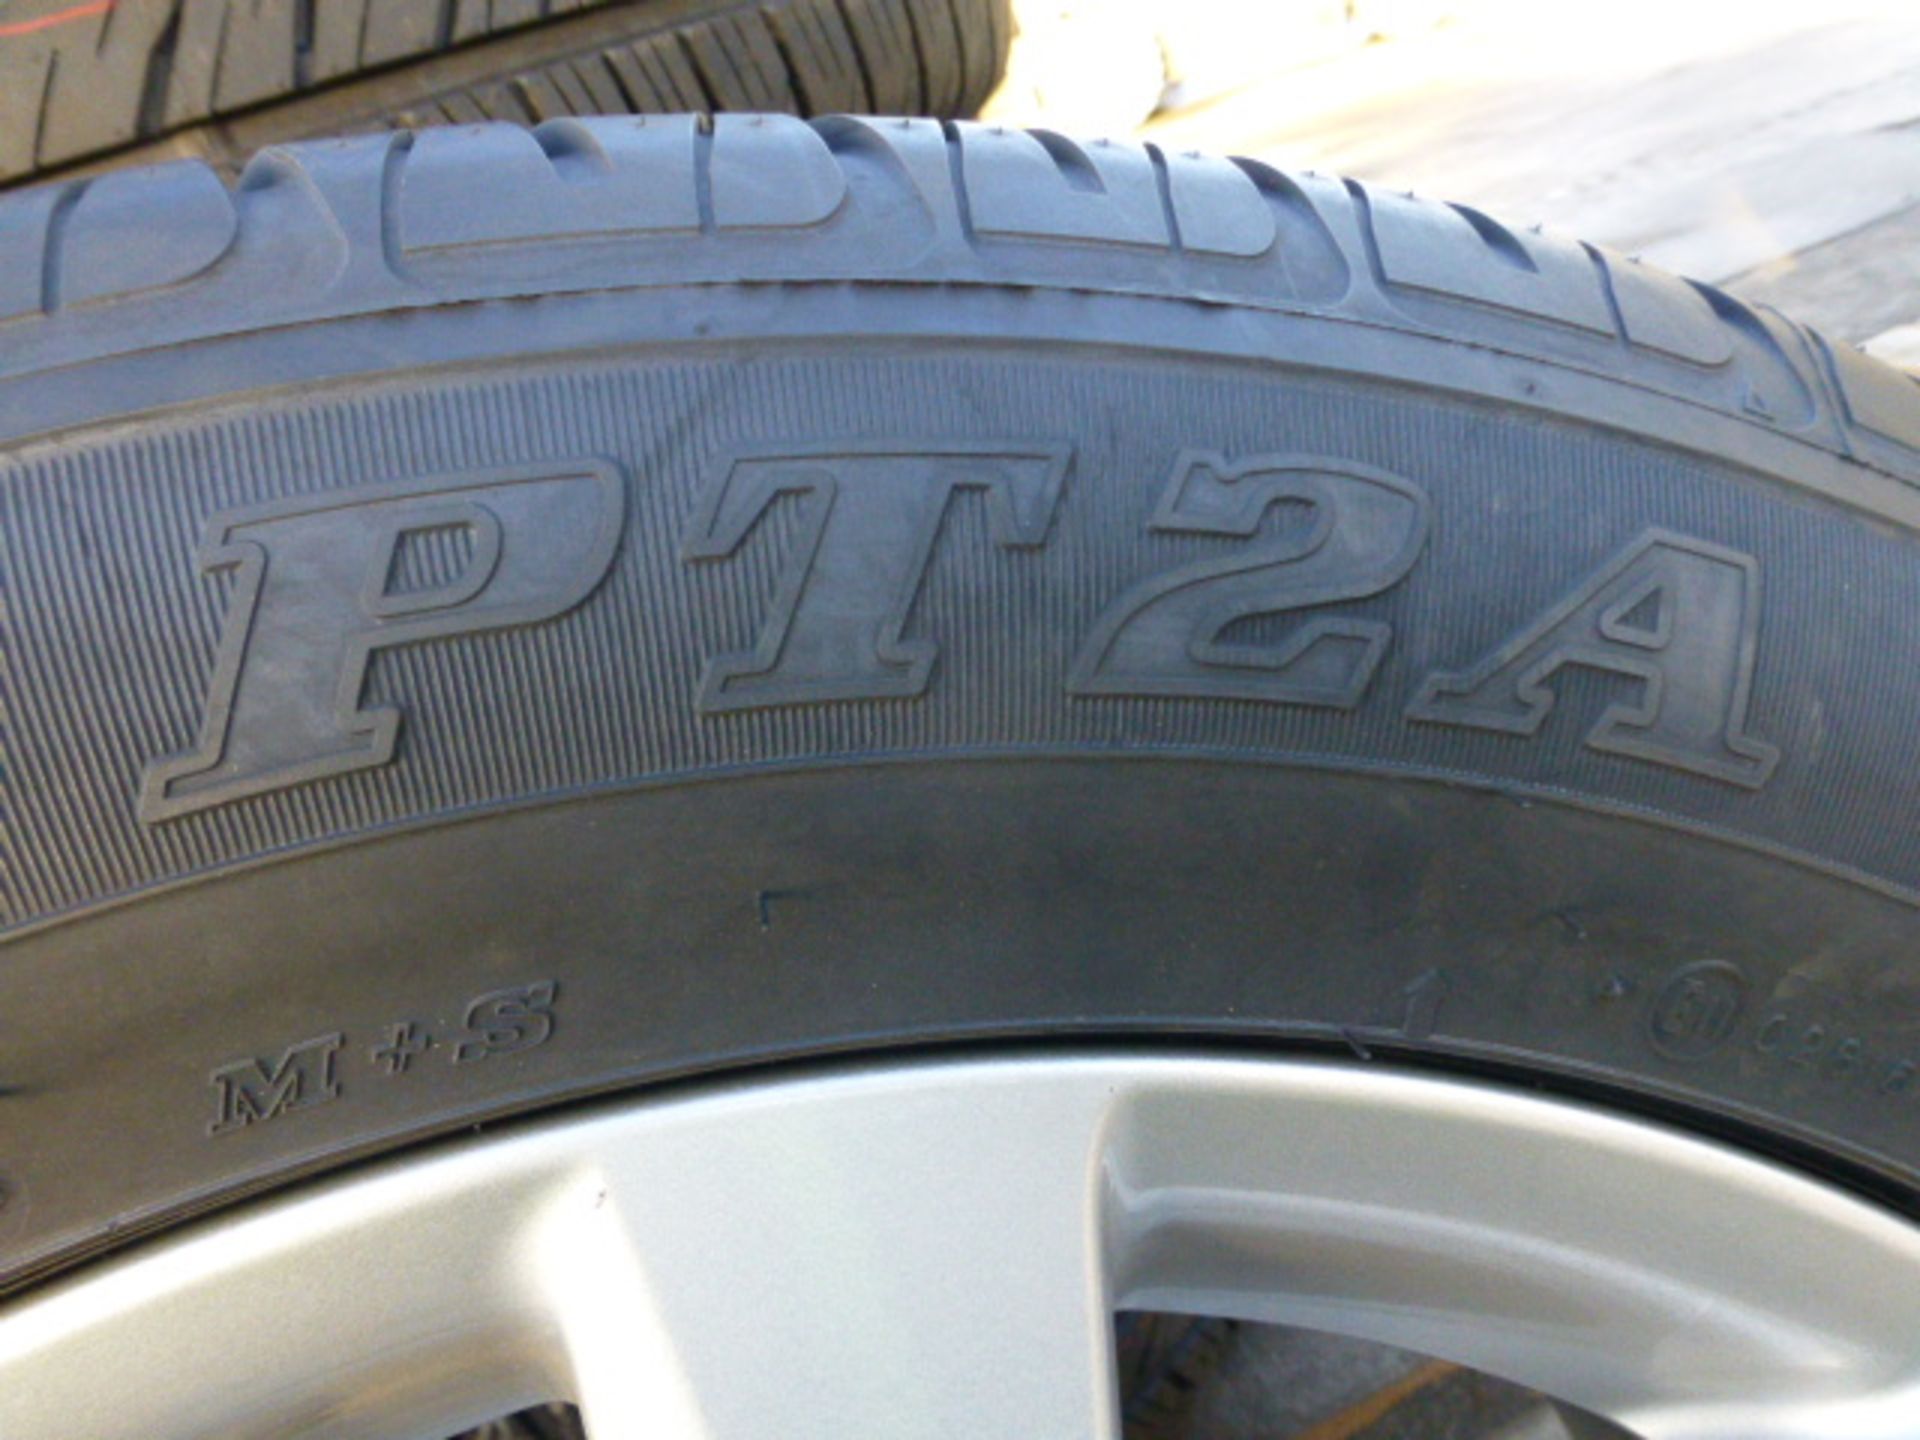 4 x Dunlop PT2A Grandtrek 285/50R20 Tyres on Land Cruiser V8 Rims - Image 4 of 6